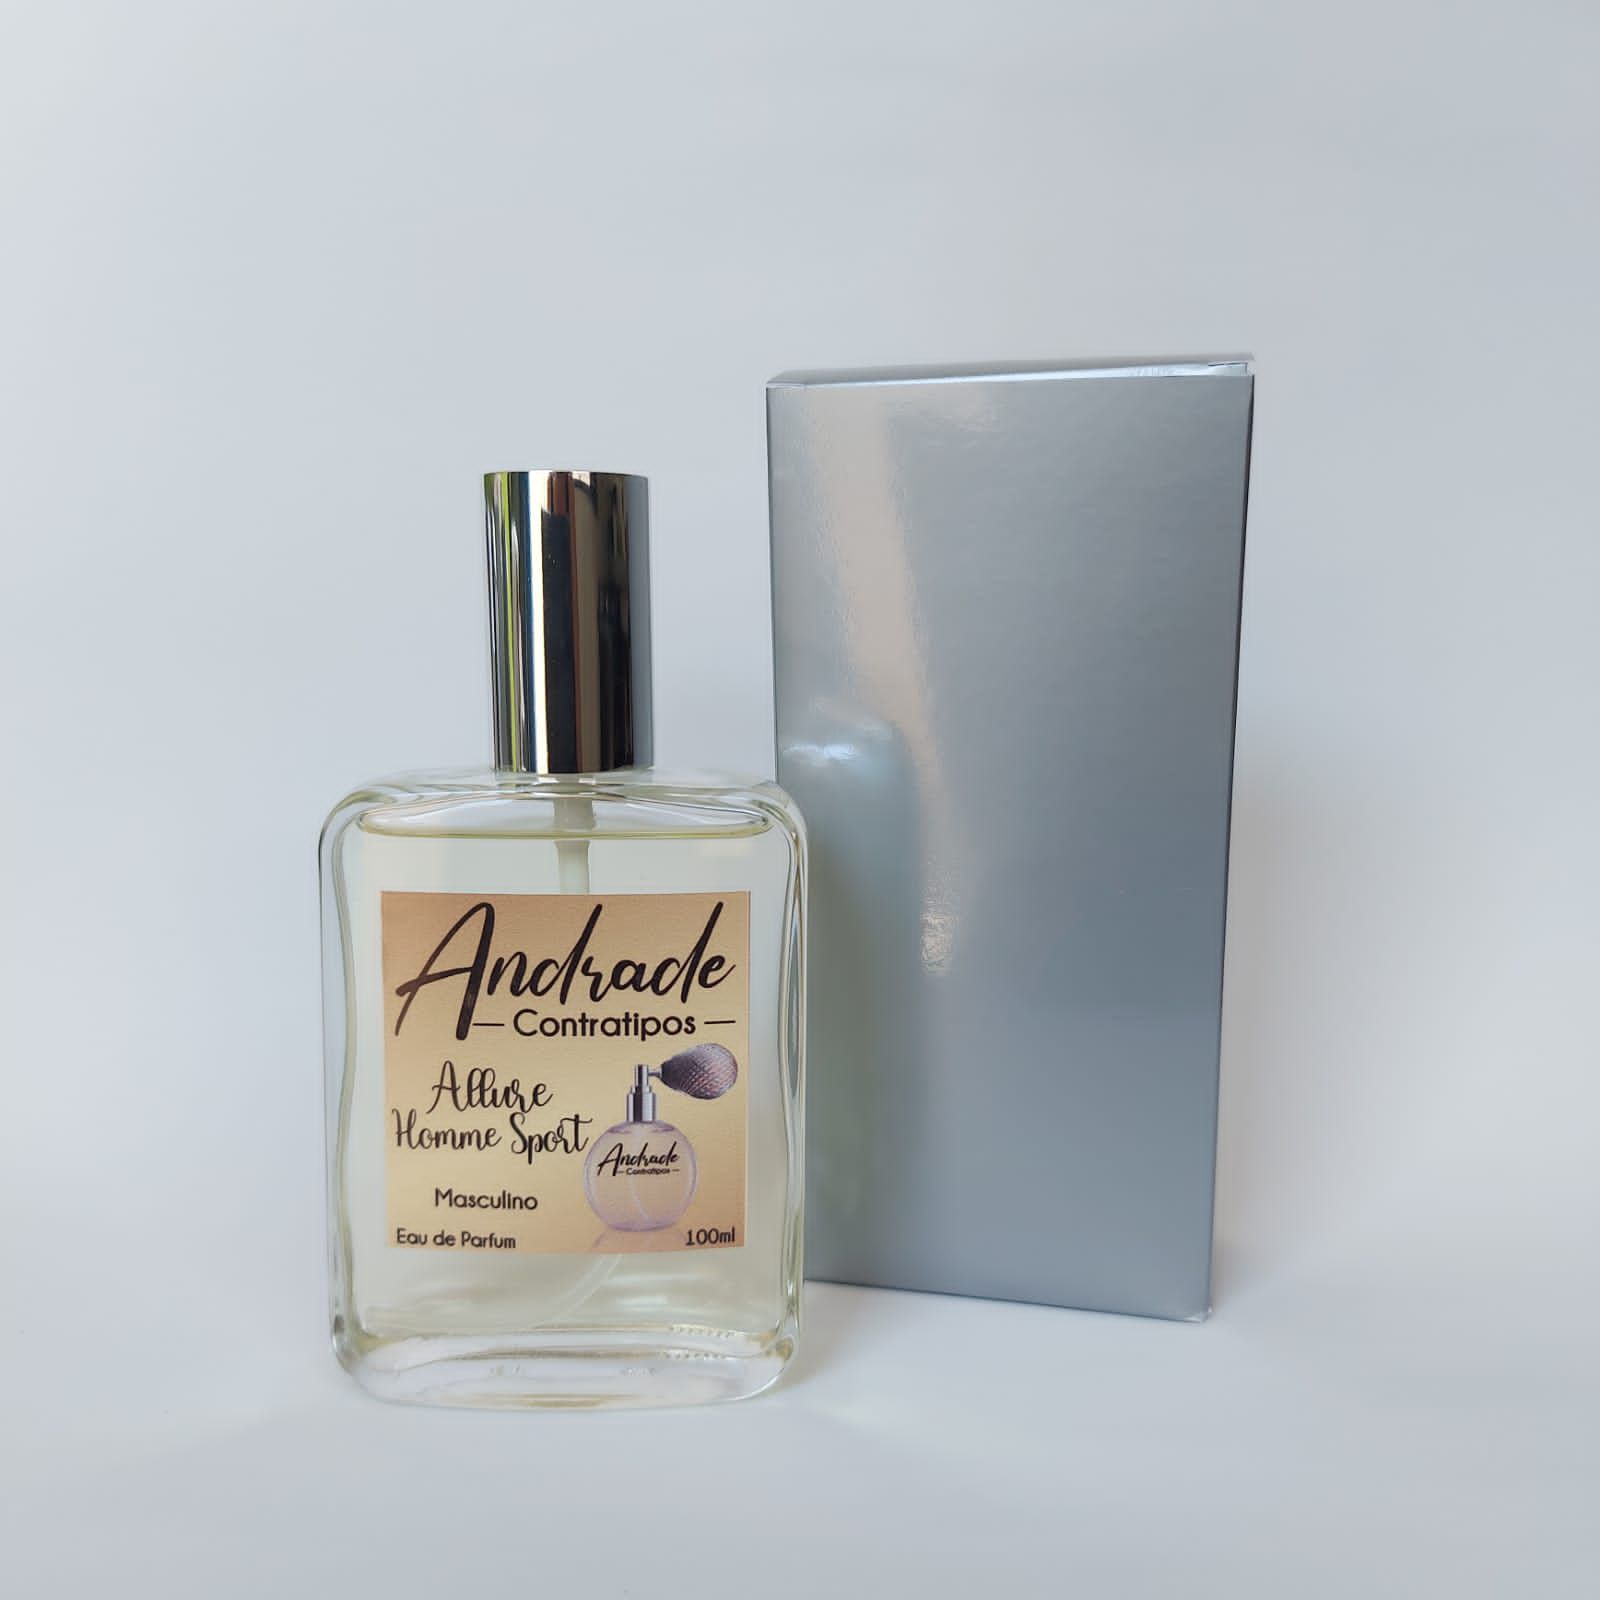 Loja de perfume - allure home sport contratipo masculino - Andrade  Contratipos - Os melhores perfumes para voce.